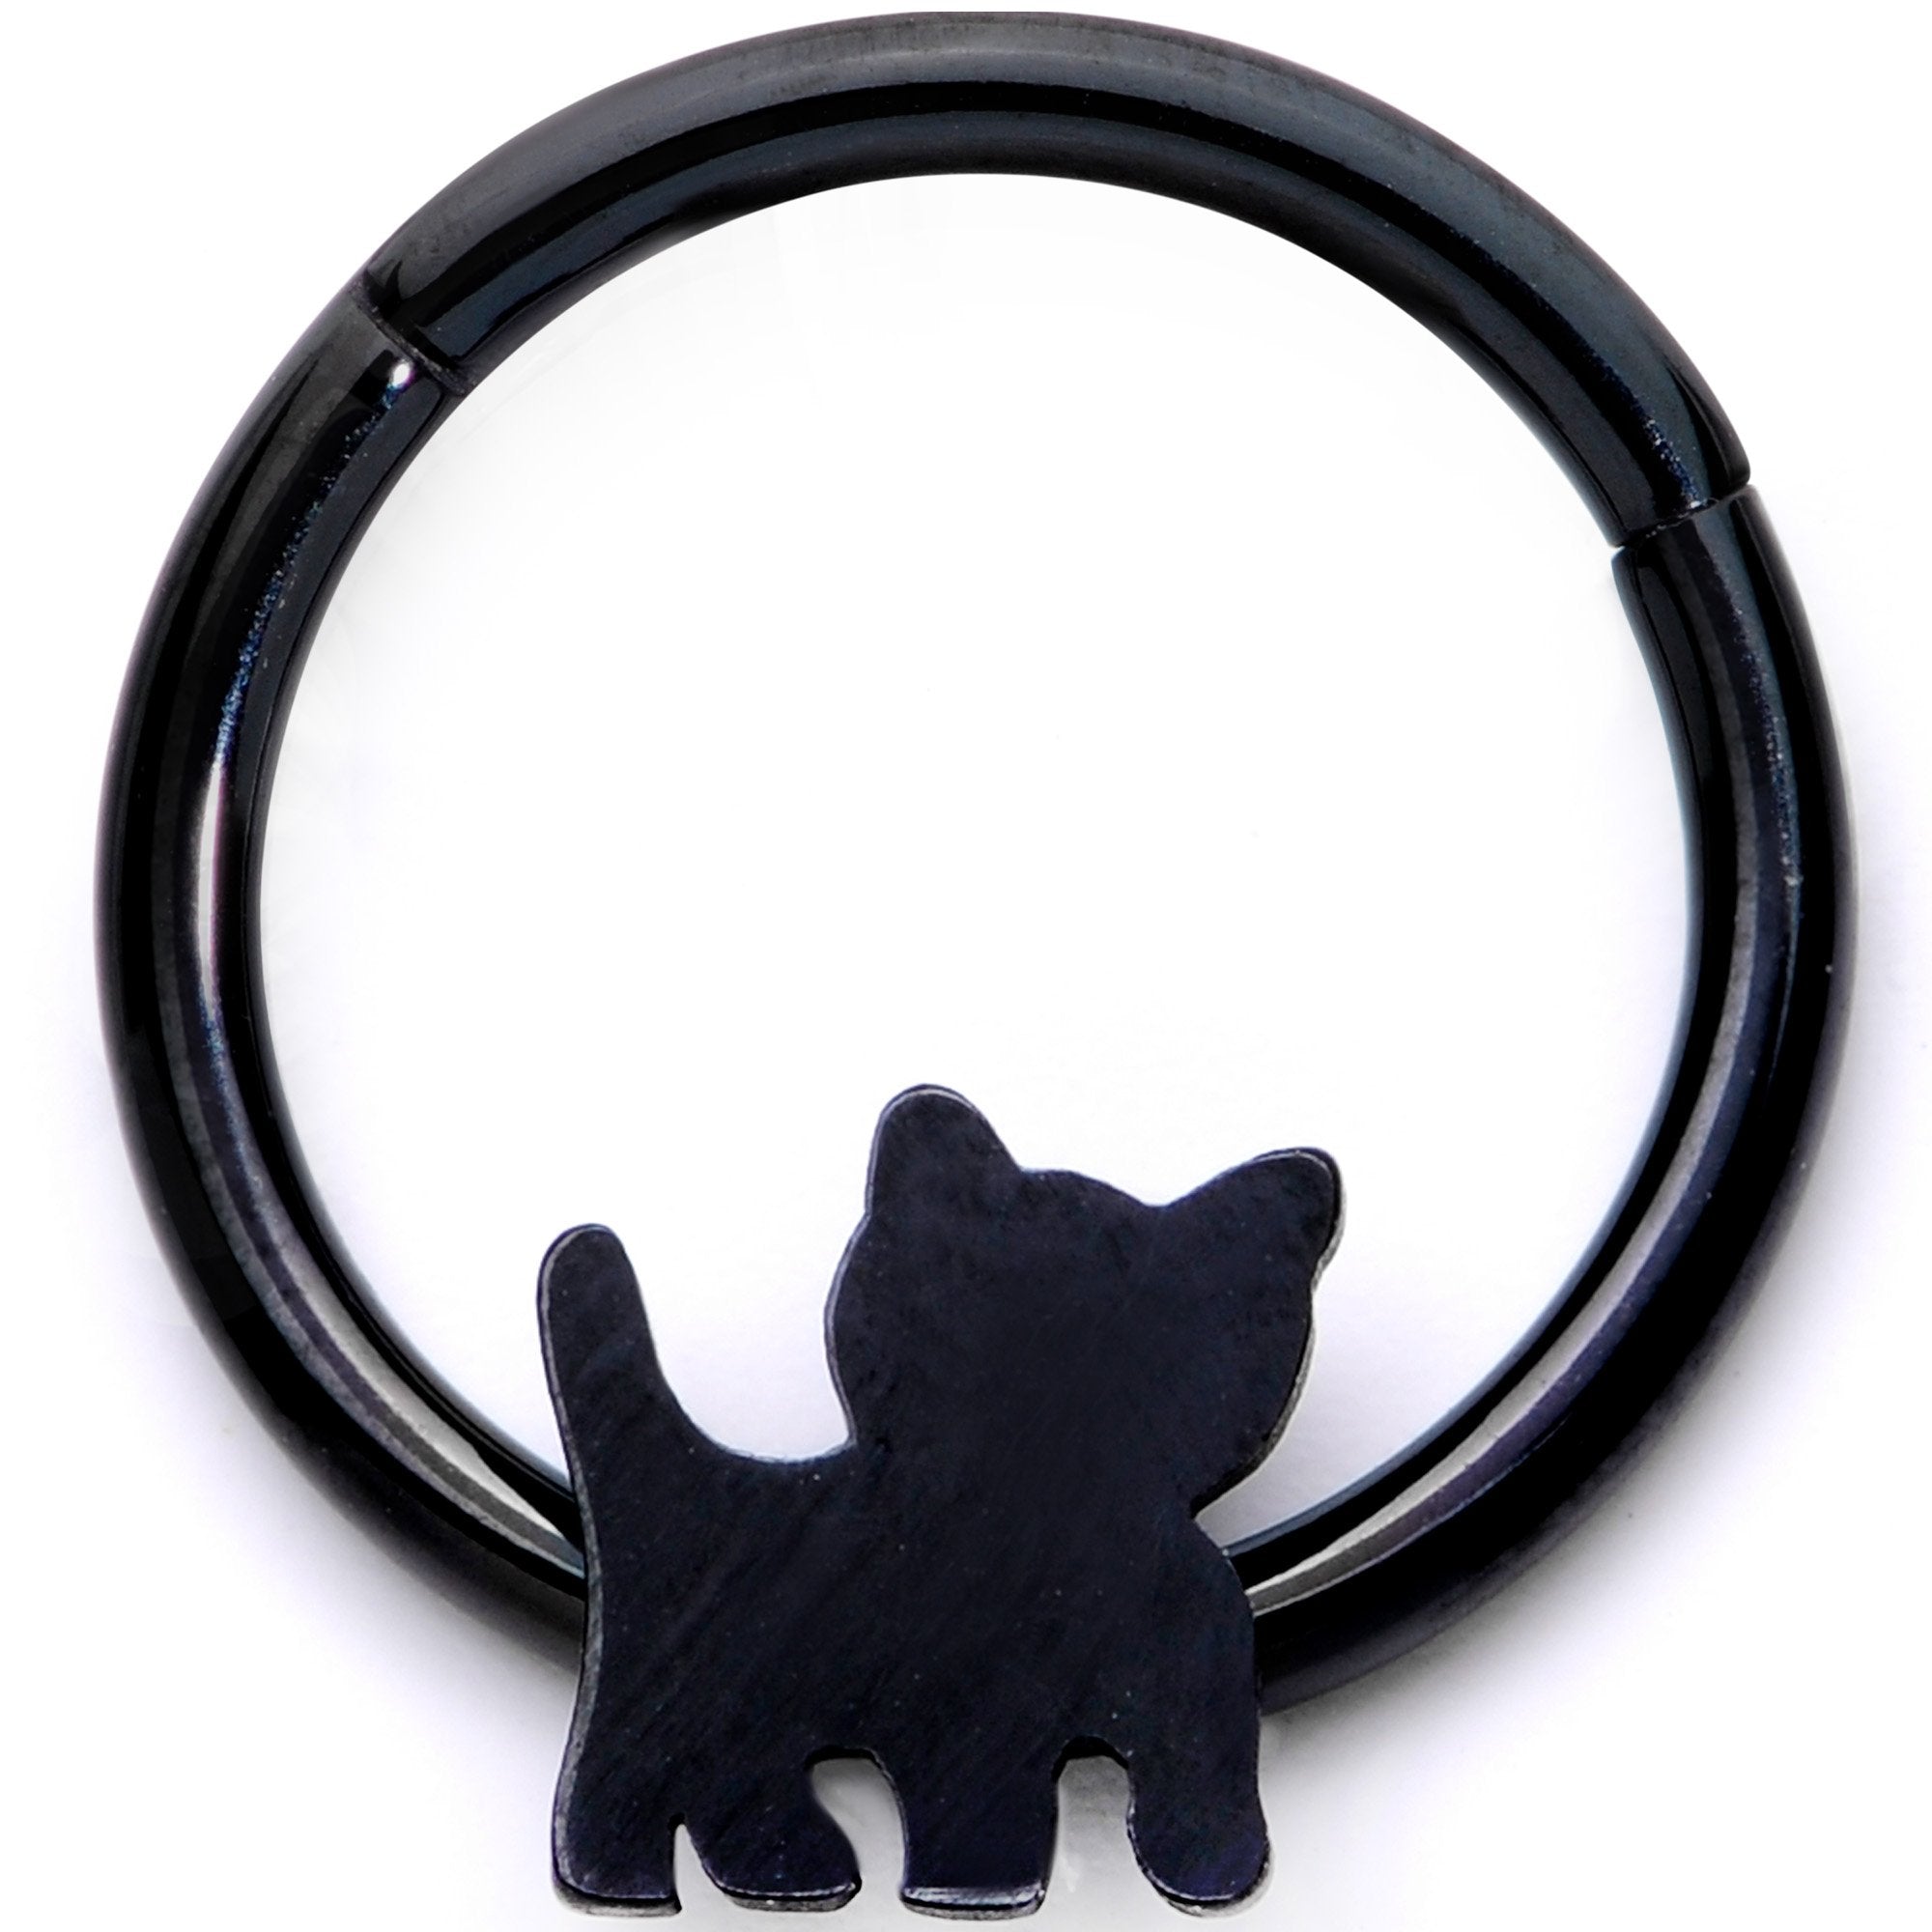 Image of 16 Gauge 3/8 Black Kitty Cat Hinged Segment Ring